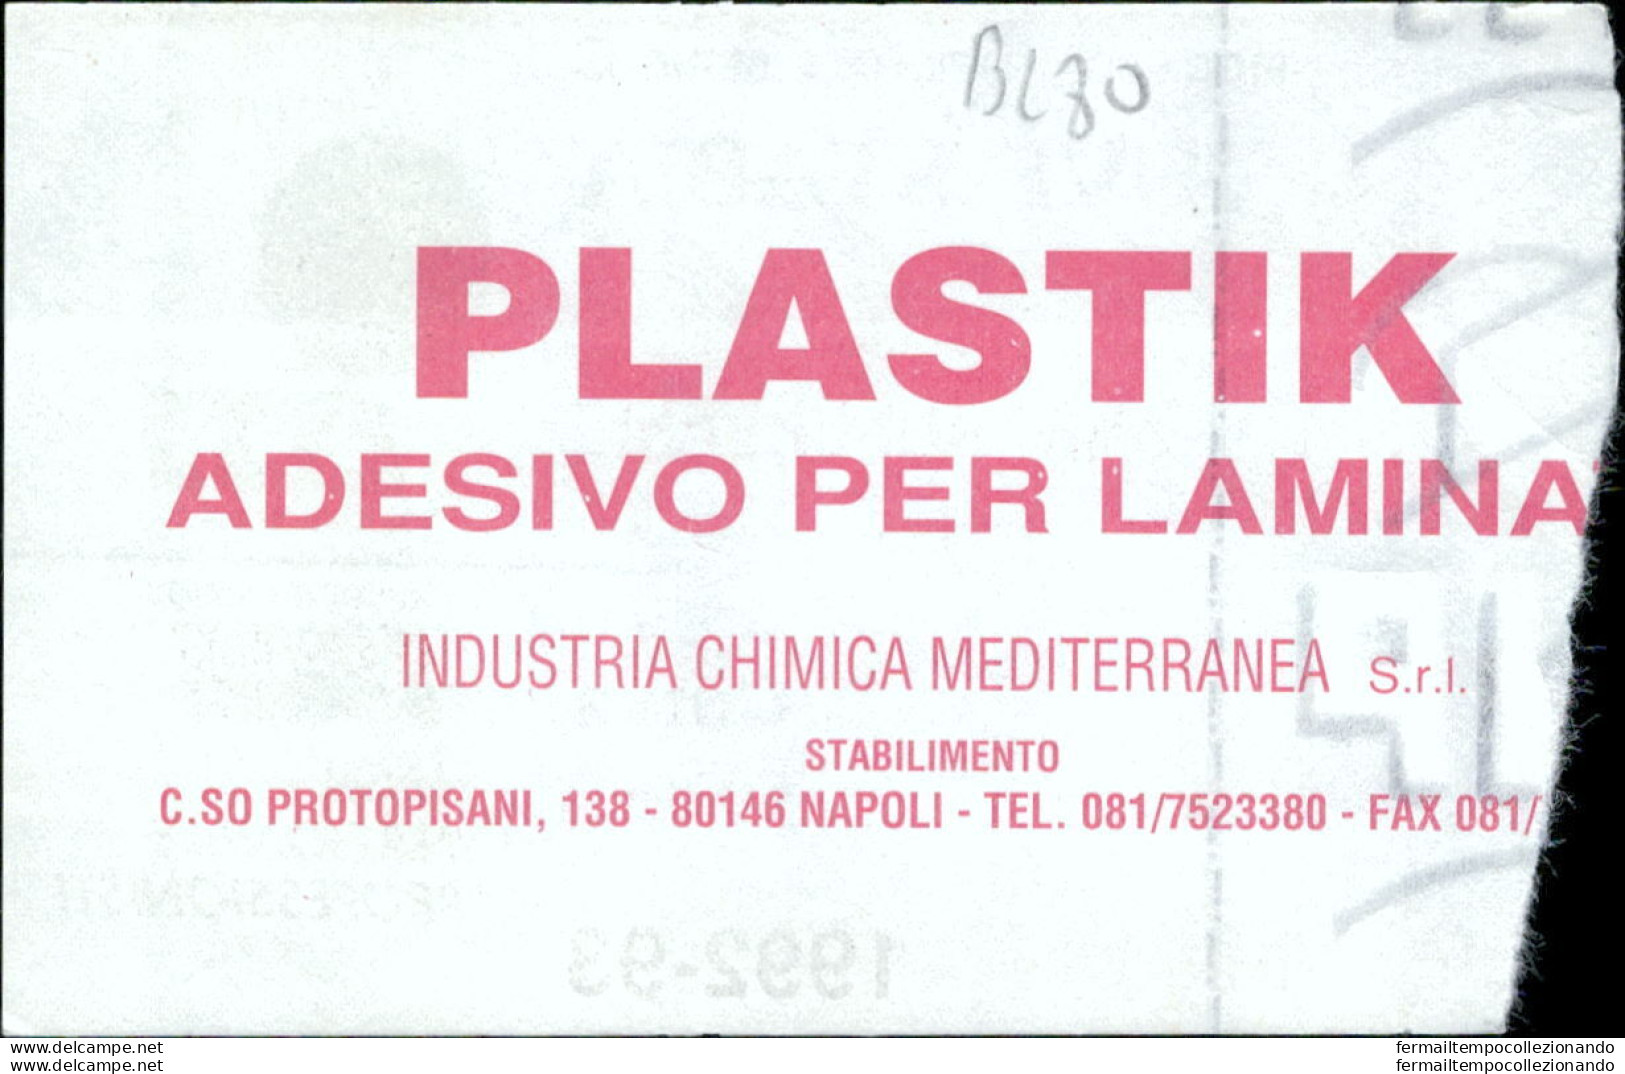 Bl80 Biglietto Calcio Ticket Juve Stabia - San Giuseppe 1992-93 - Biglietti D'ingresso